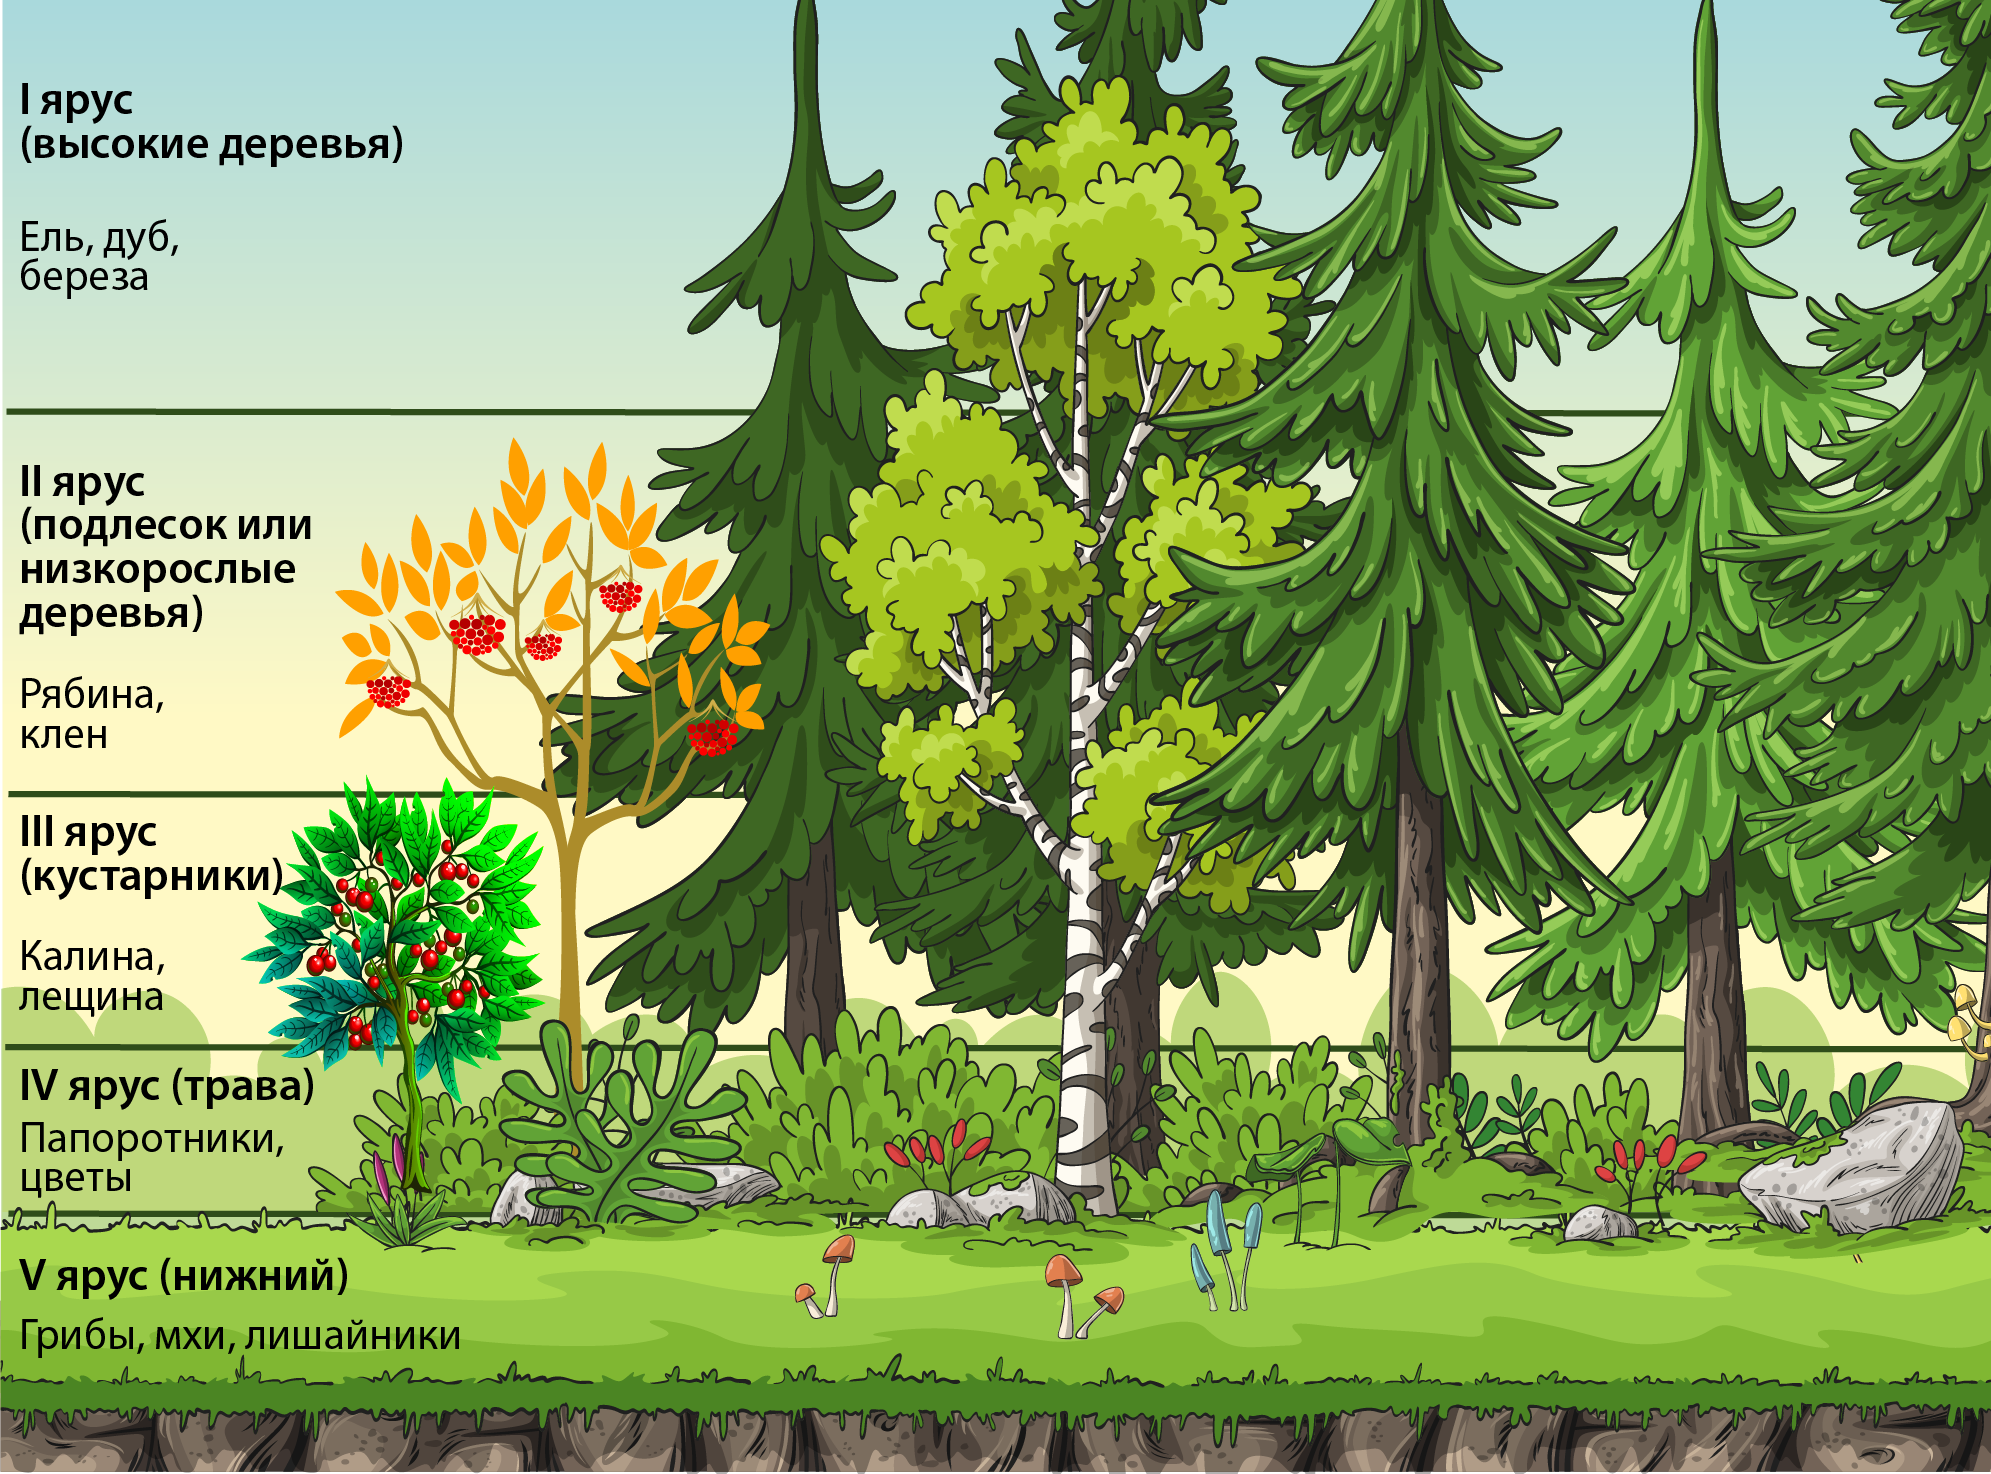 Биология 7 класс параграф структура растительного сообщества. Ярусность лесного фитоценоза. Ярусы фитоценоза 4 яруса. Ярусность Лесной экосистемы. Ярусность древостоя леса.